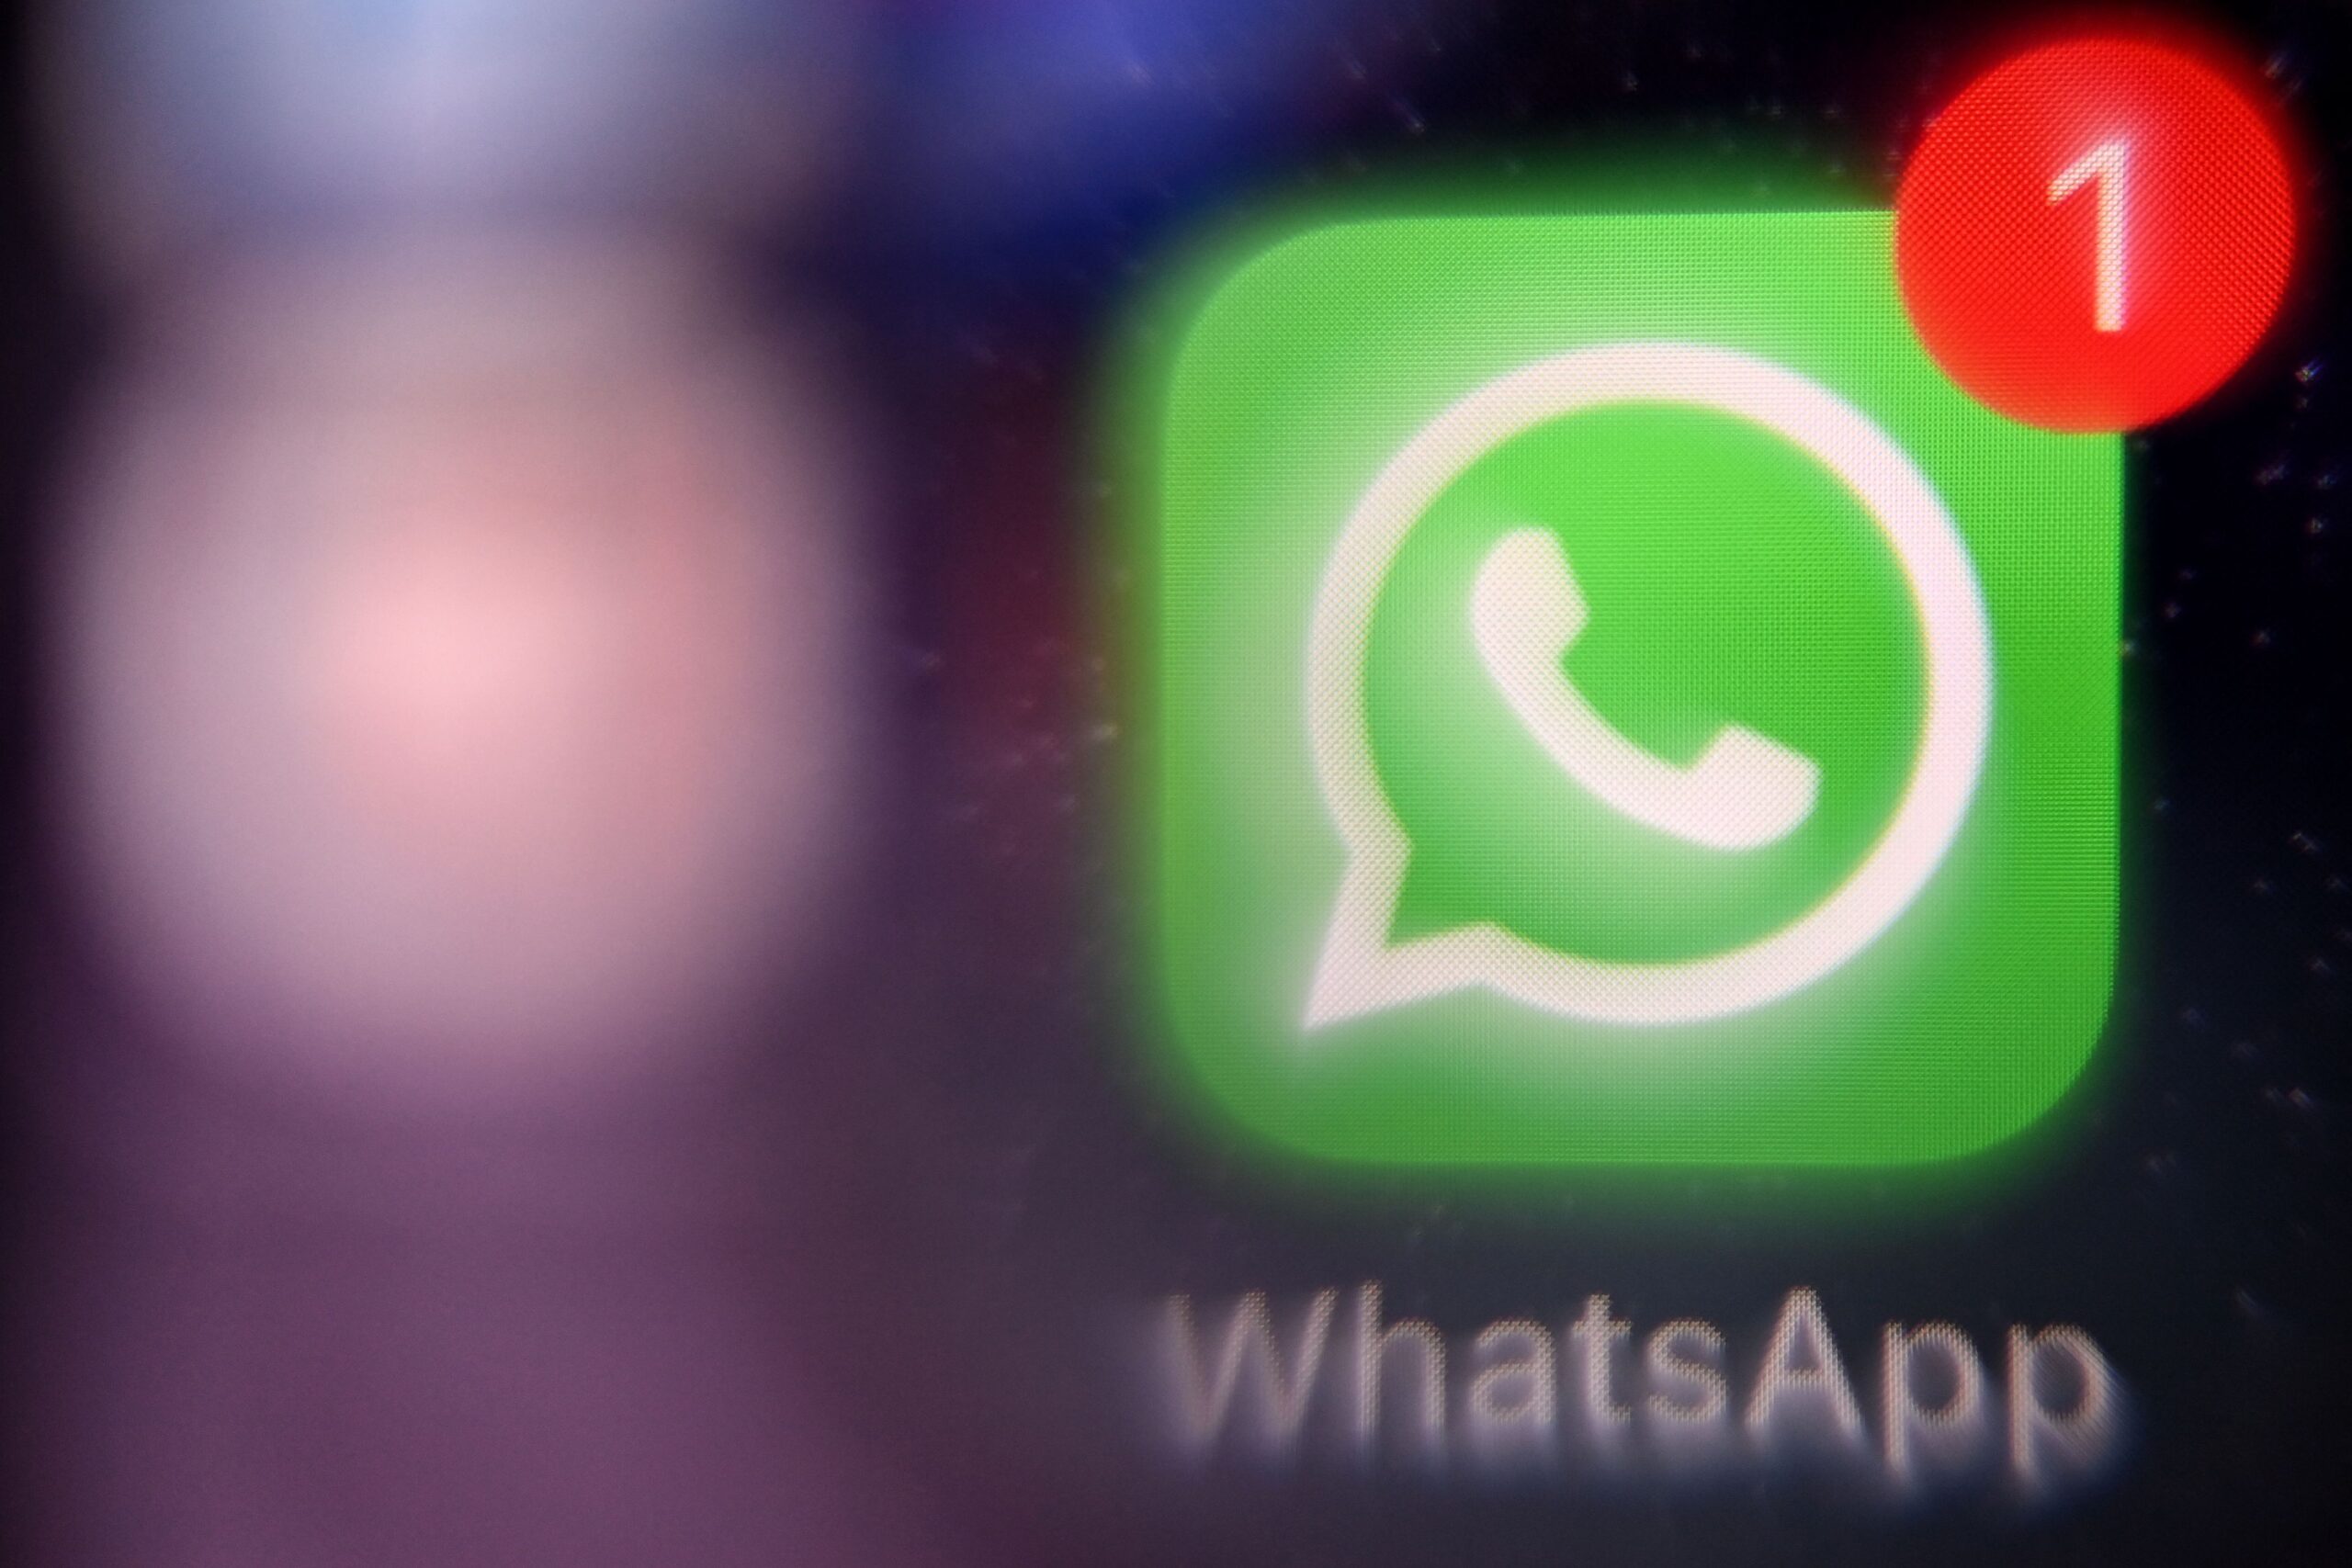 WhatsApp Backup guardará todo lo que envíe o guarde en su aplicación